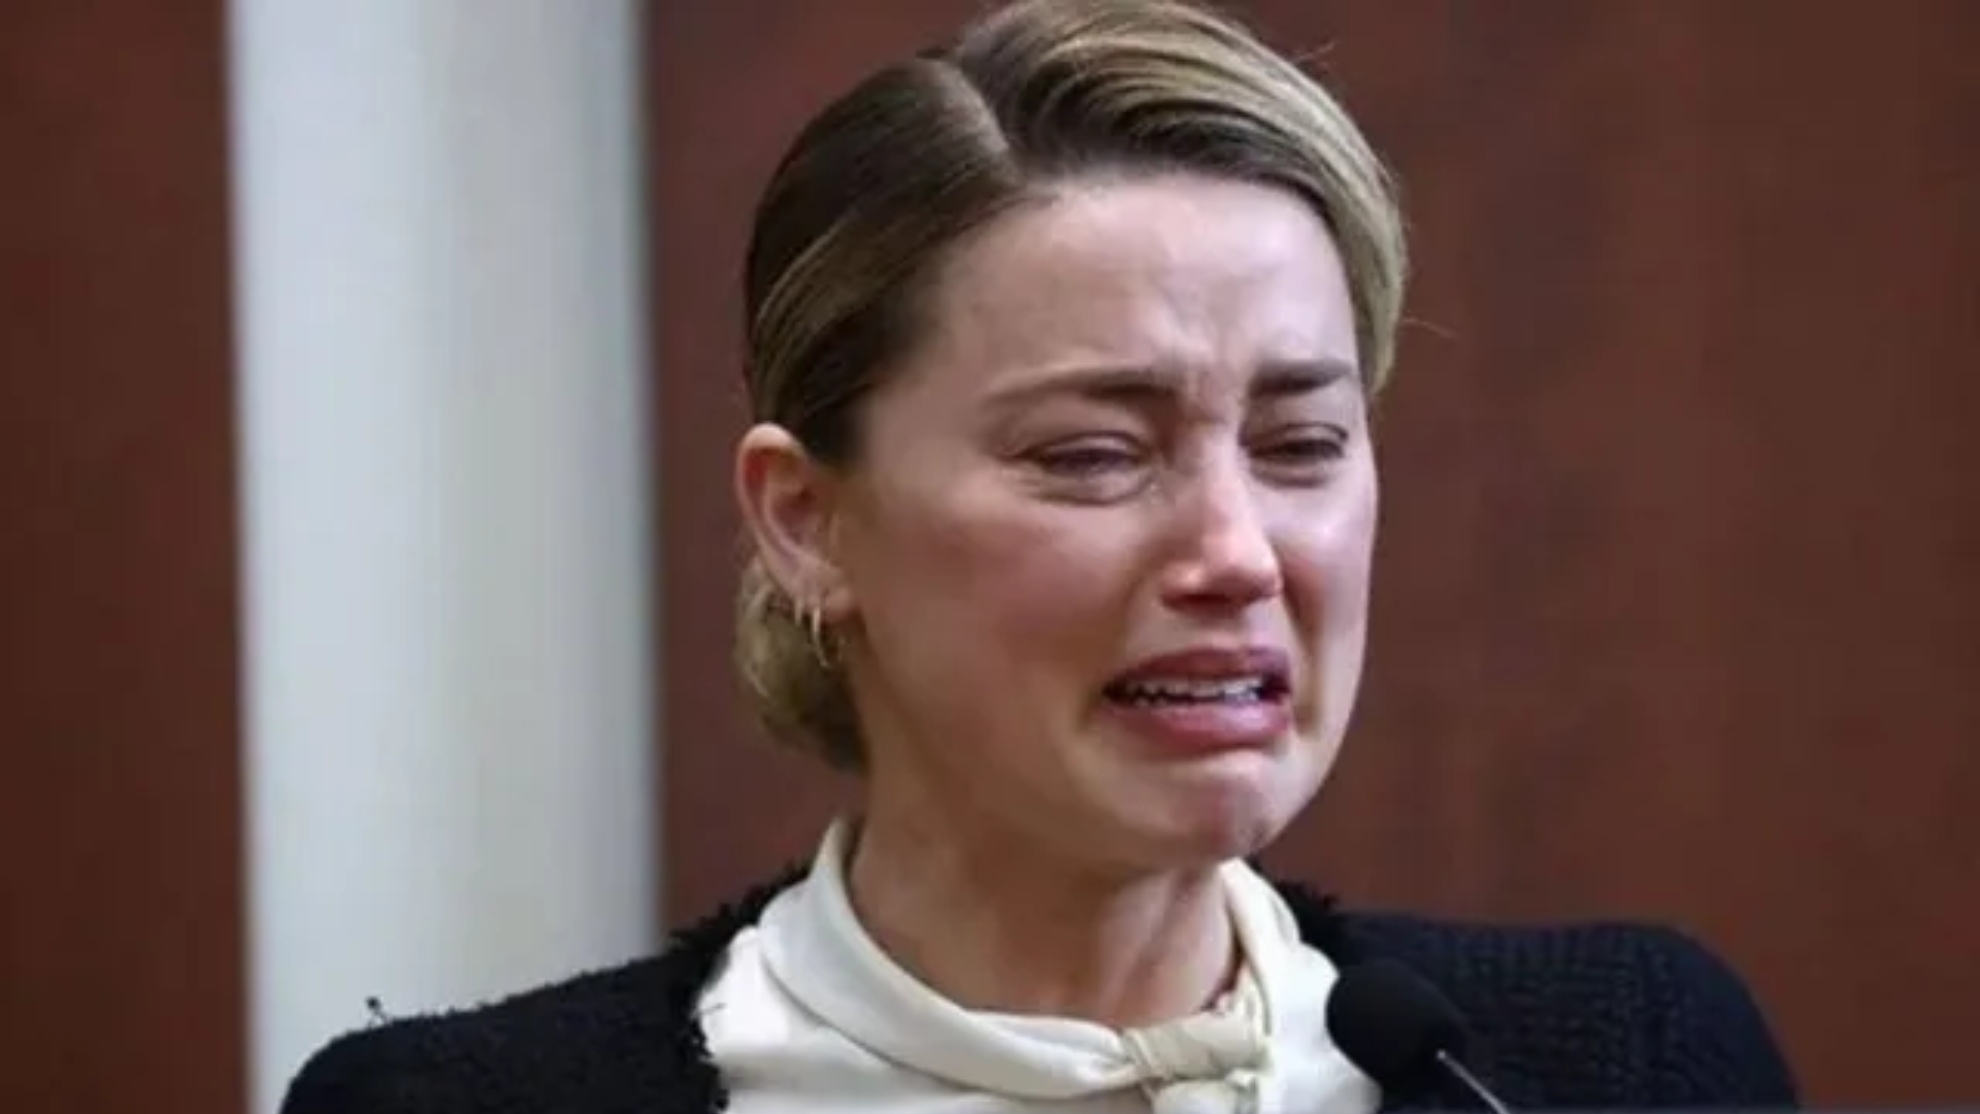 El jurado del juicio de Johnny Depp no se creyó las "lágrimas de cocodrilo" de Amber Heard.